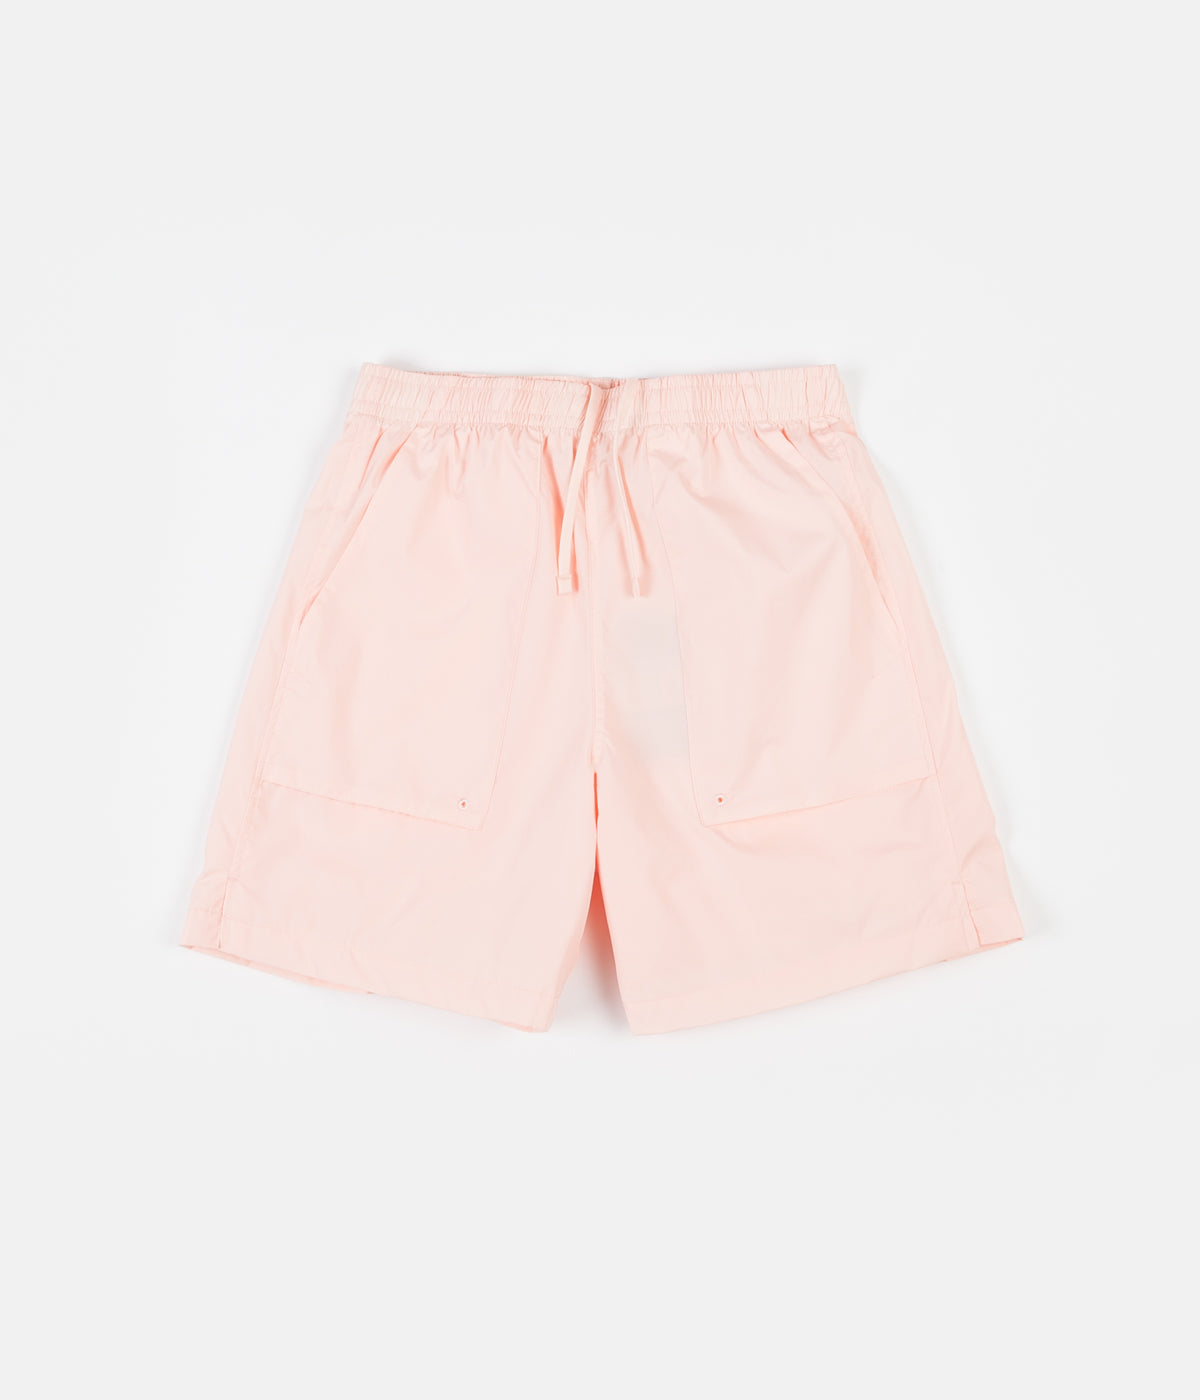 coral nike shorts